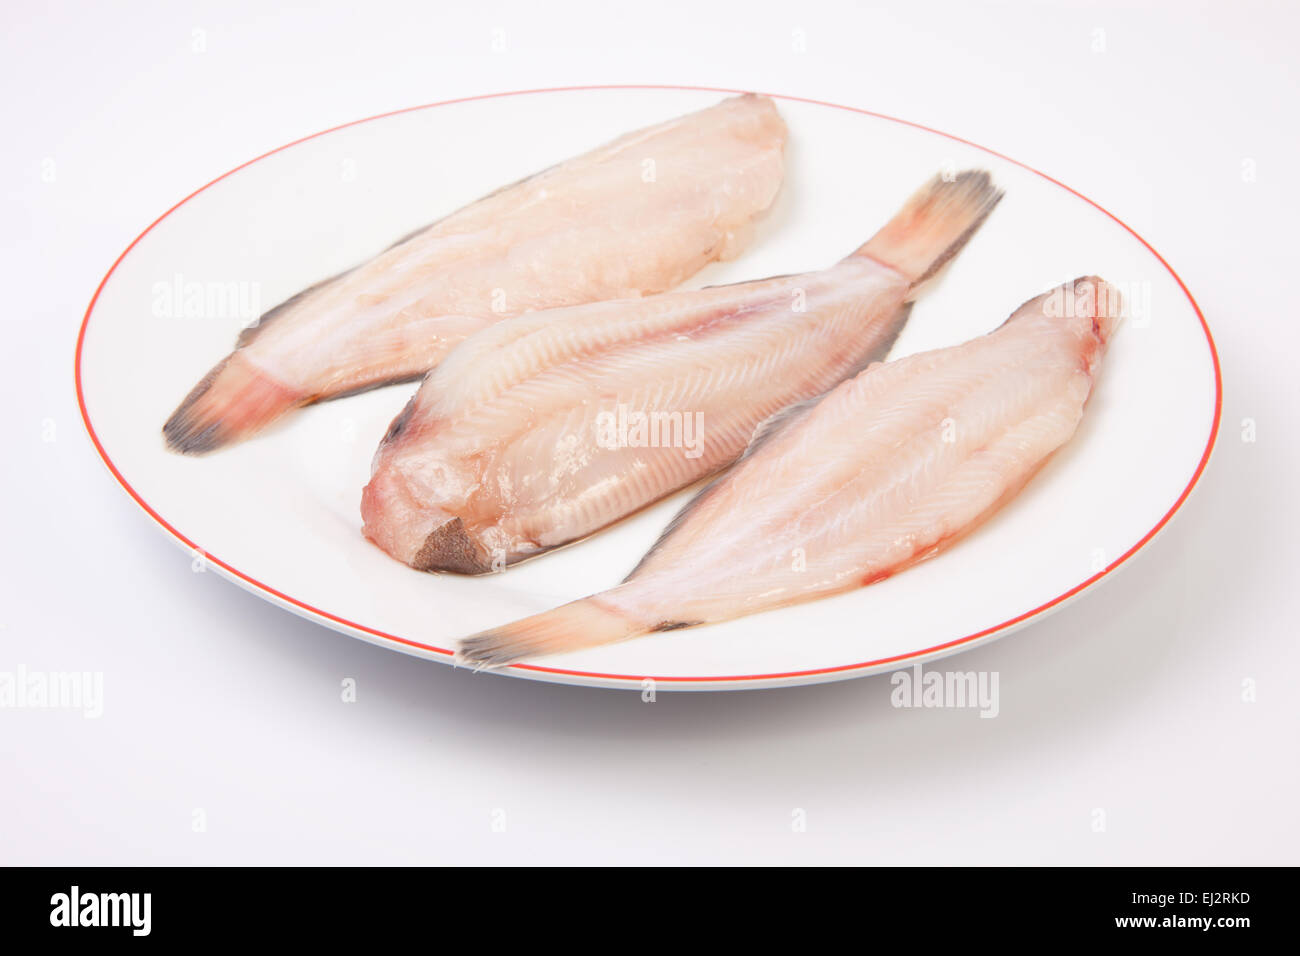 Materie suola pesci pronti per cucinare. Piastra di tre pezzi isolati su sfondo bianco Foto Stock